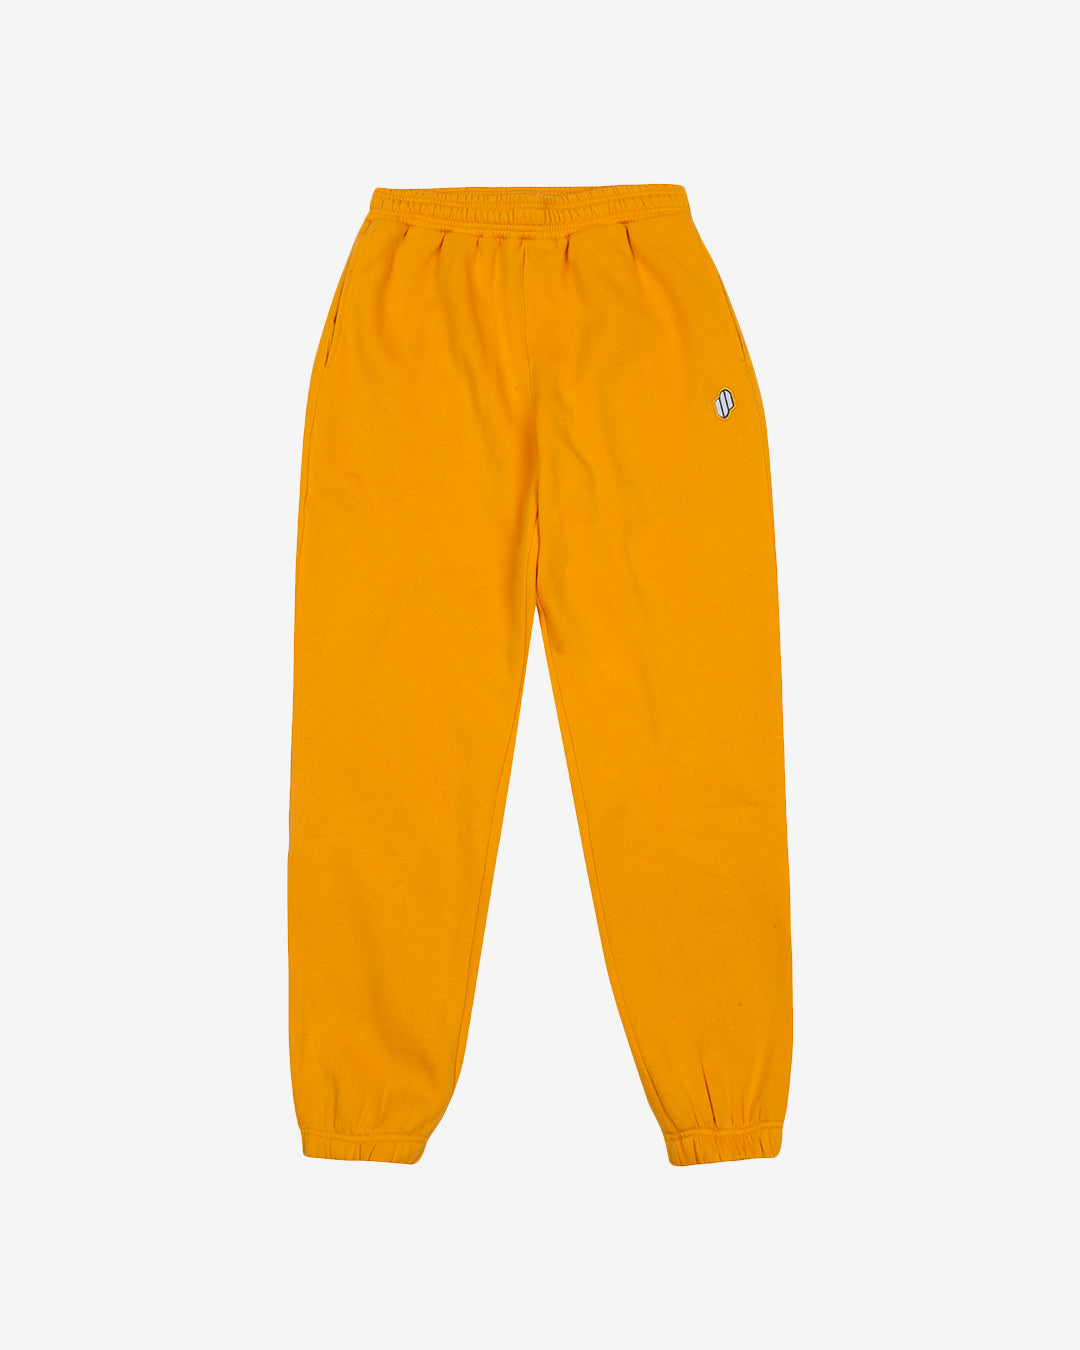 PFC: 002-4 - Men's Sweatpants - Amber Yellow